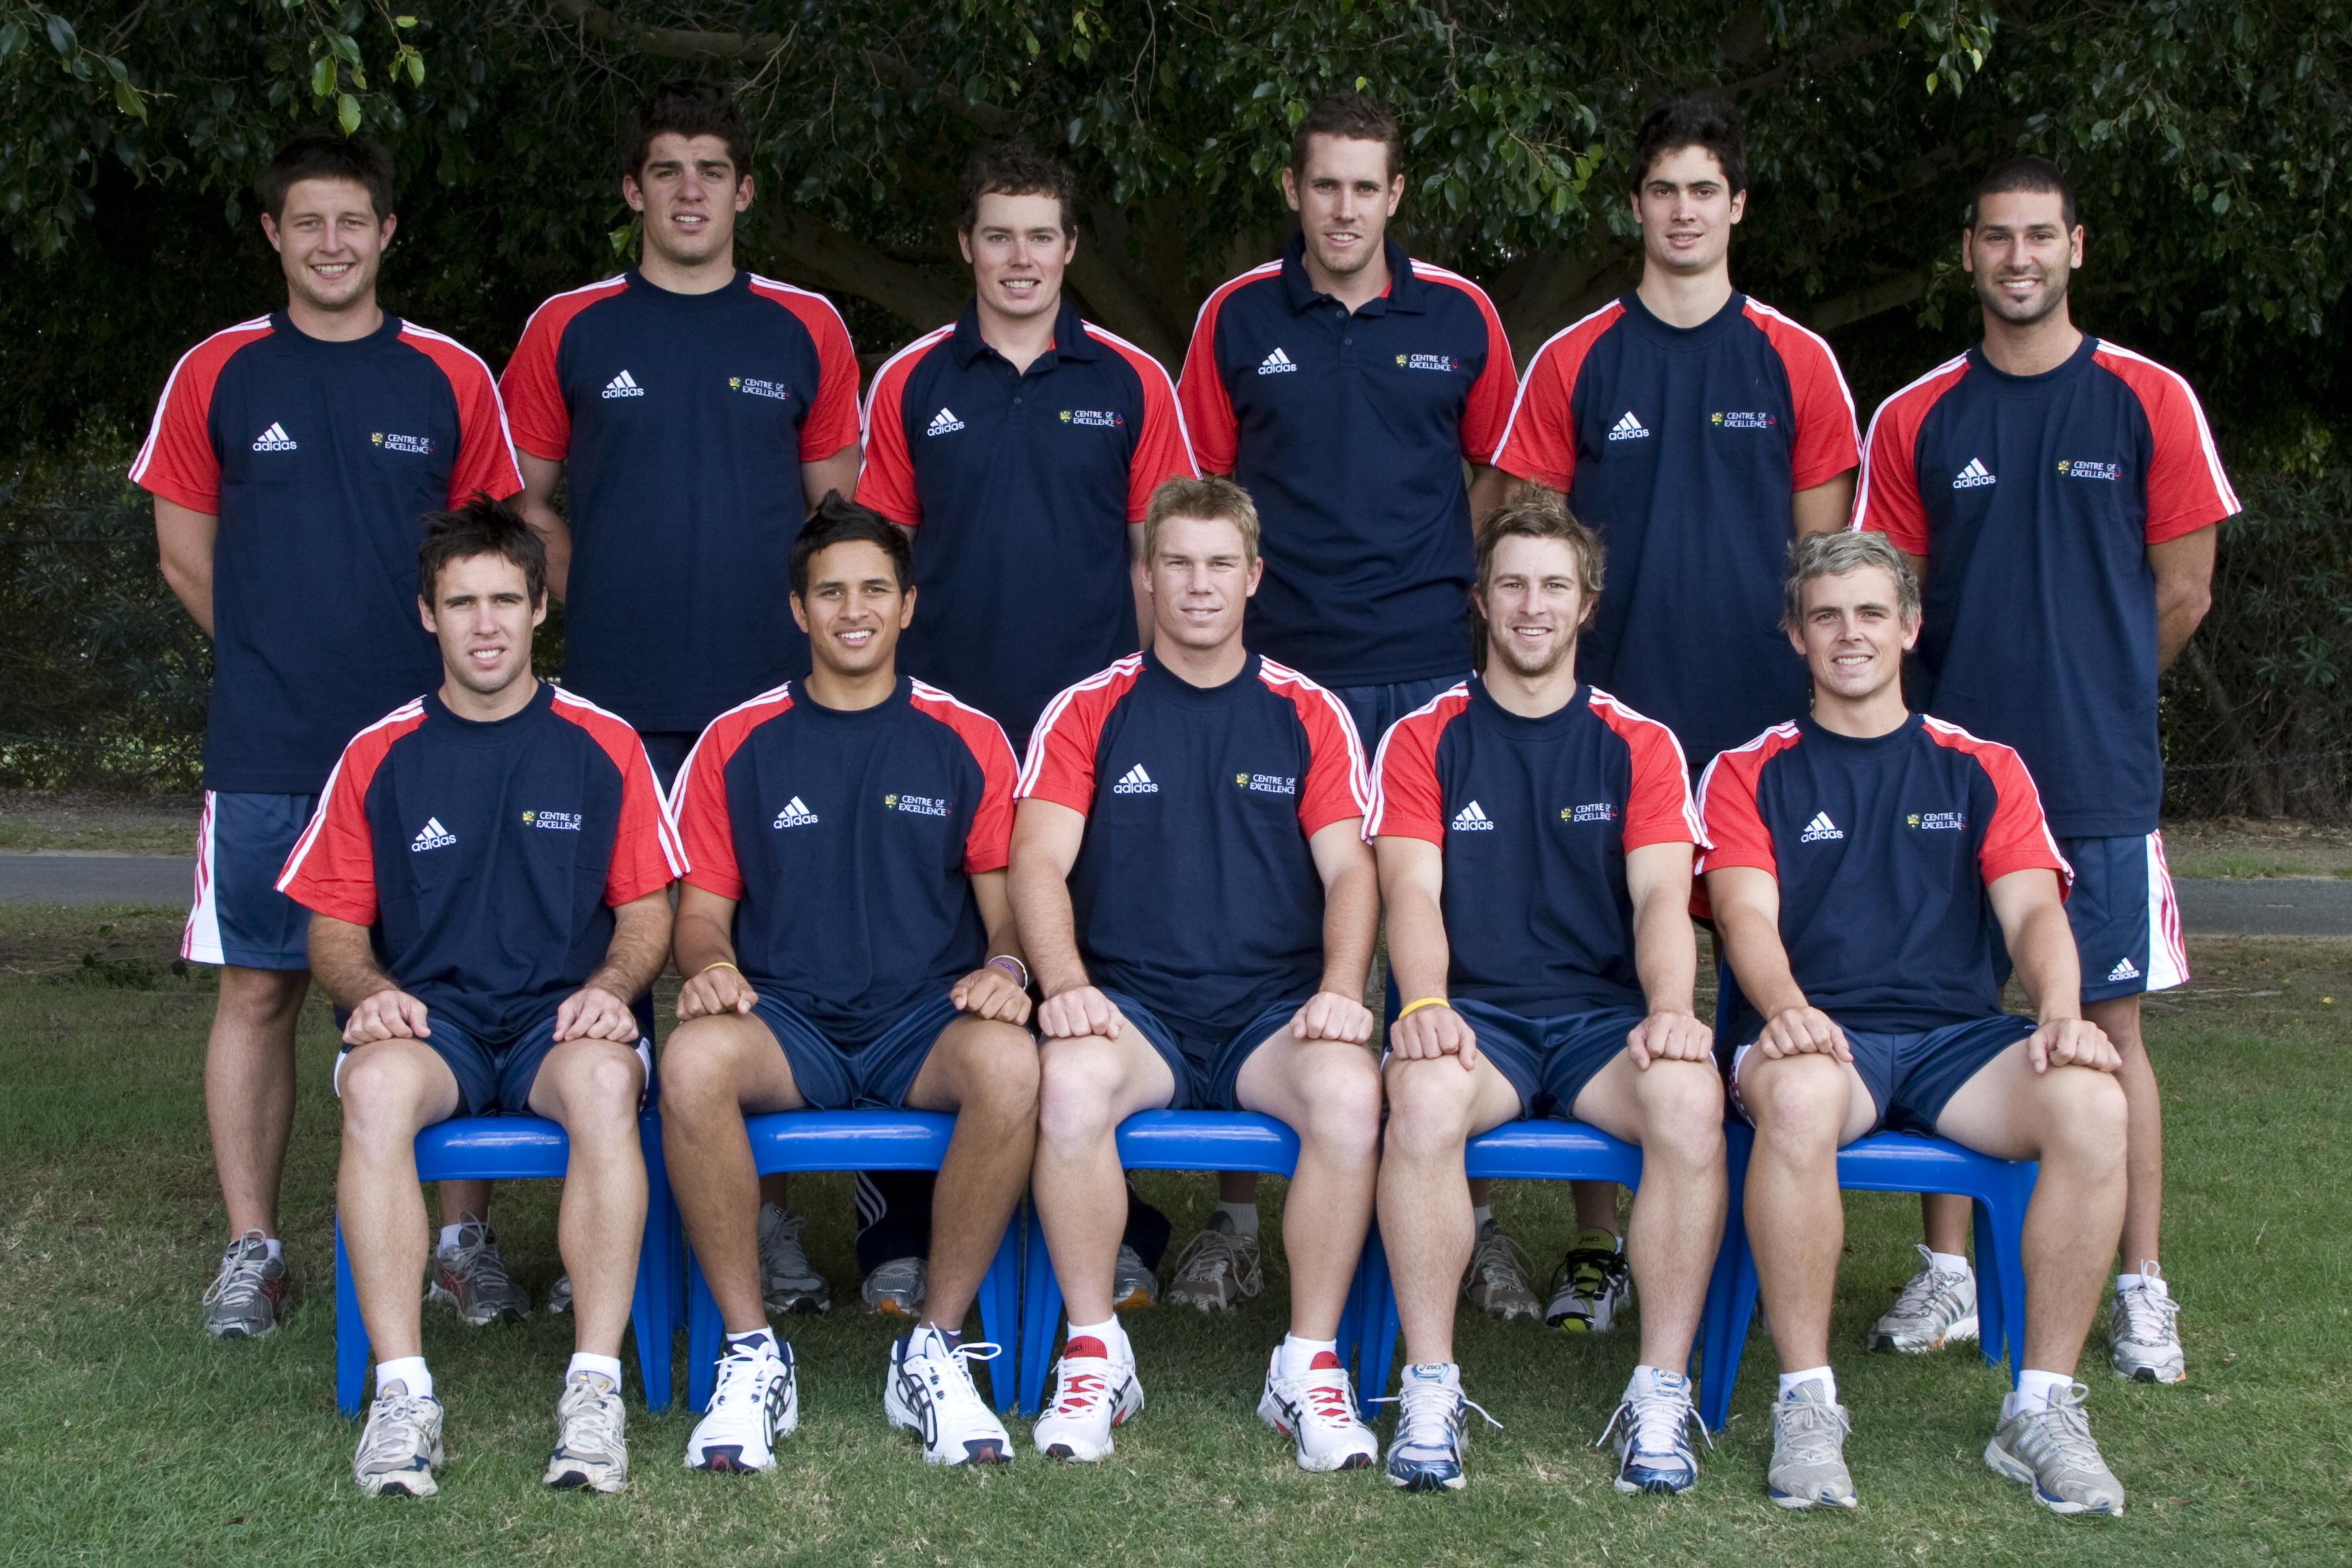 2008 AIS Cricket Team Photo